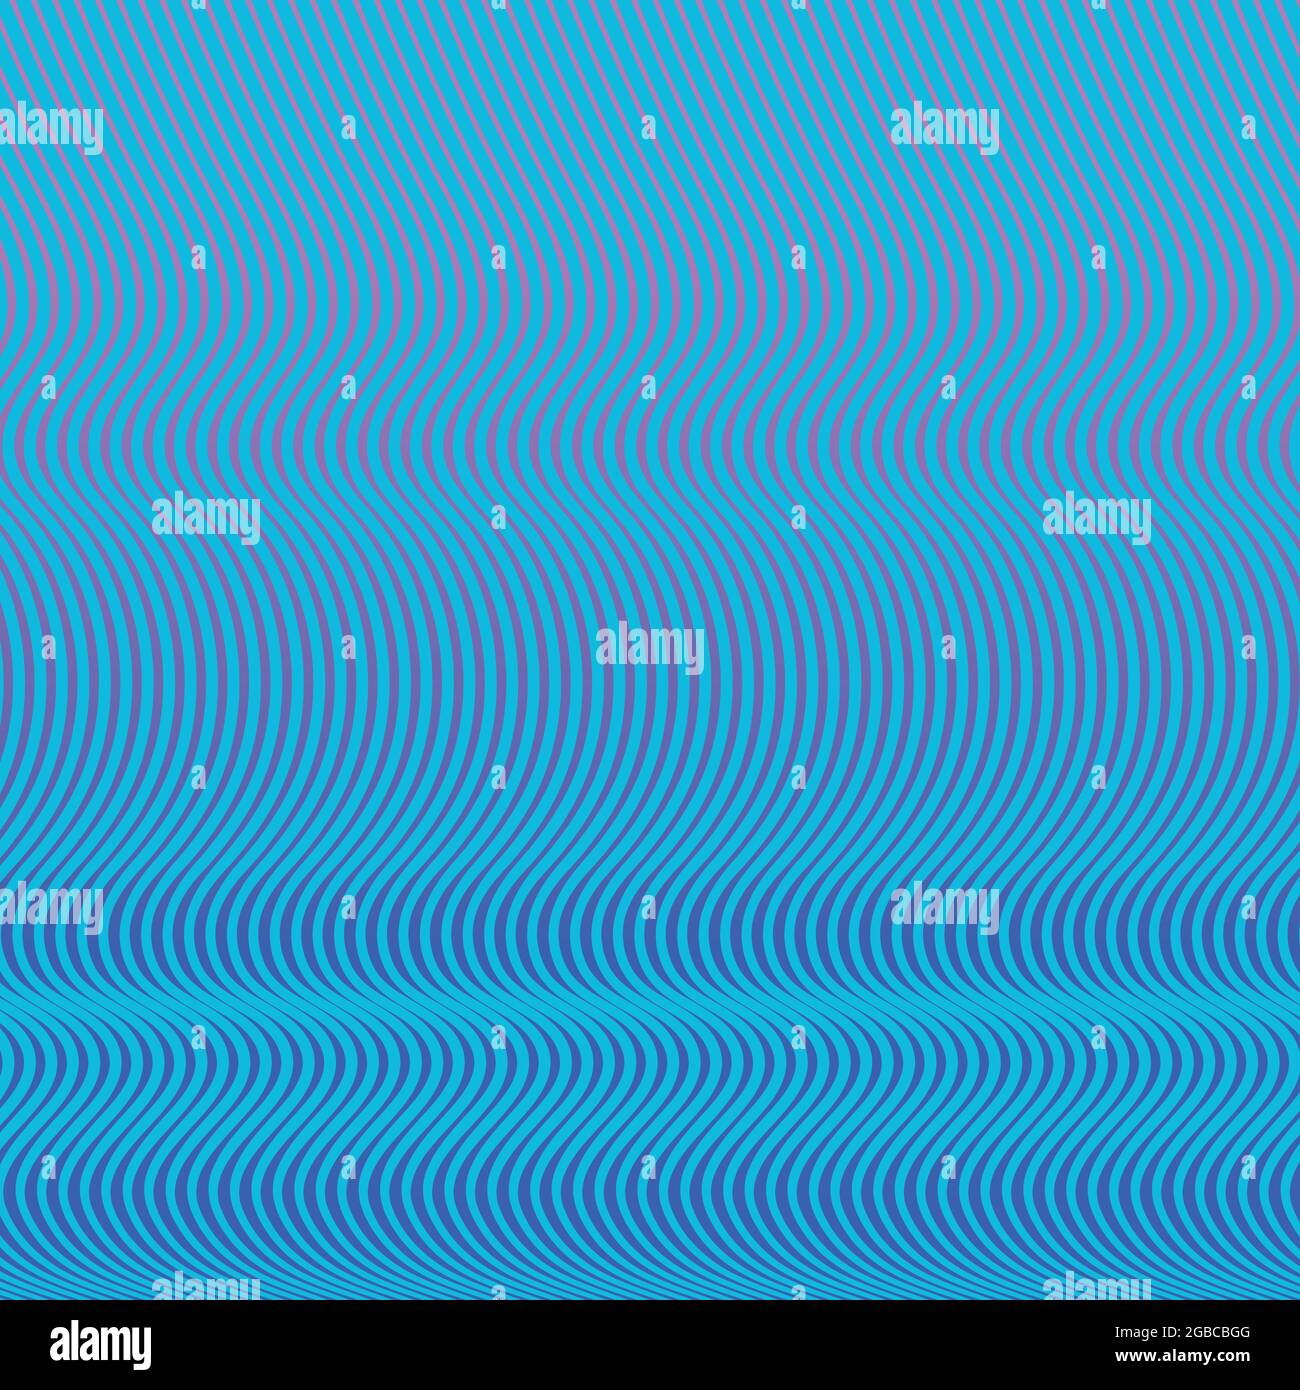 Ein abstraktes Muster mit Linien in Wellen. Die Linien sind aquablau und der Hintergrund ist ein sanftes blau-violettes Farbverlauf. Stock Vektor